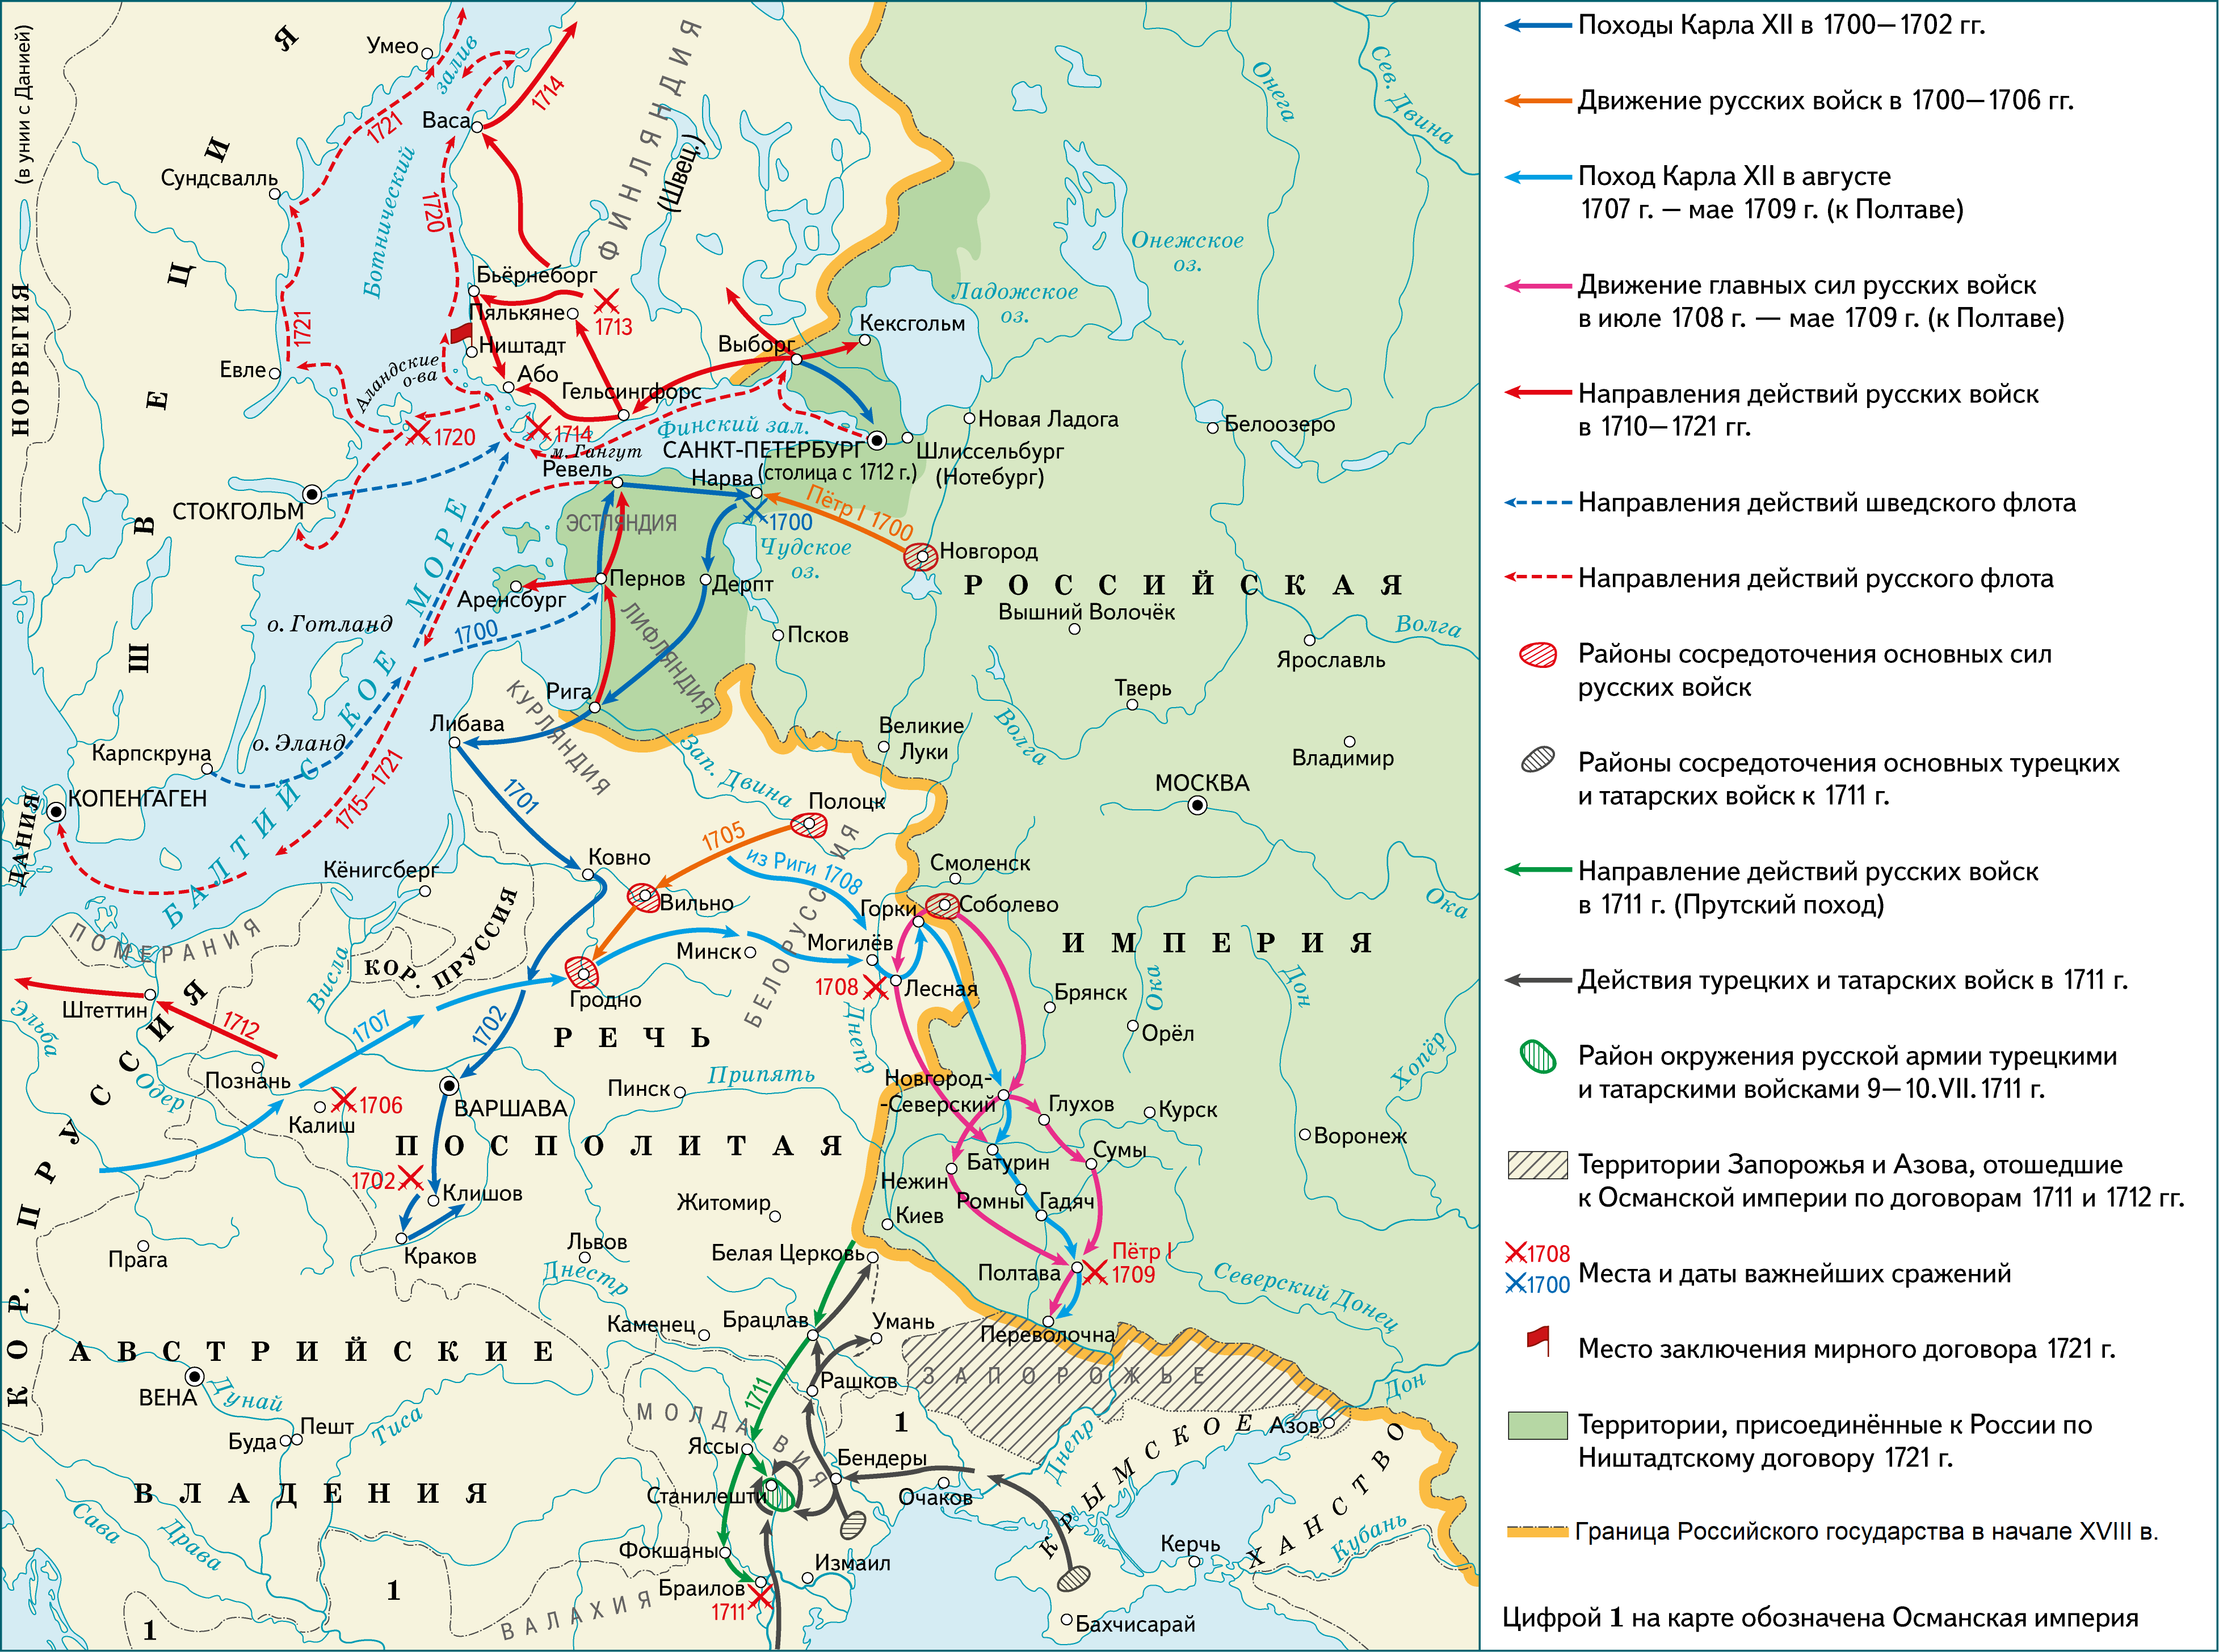 По ништадтскому миру россия. Карта Северной войны 1700-1721.